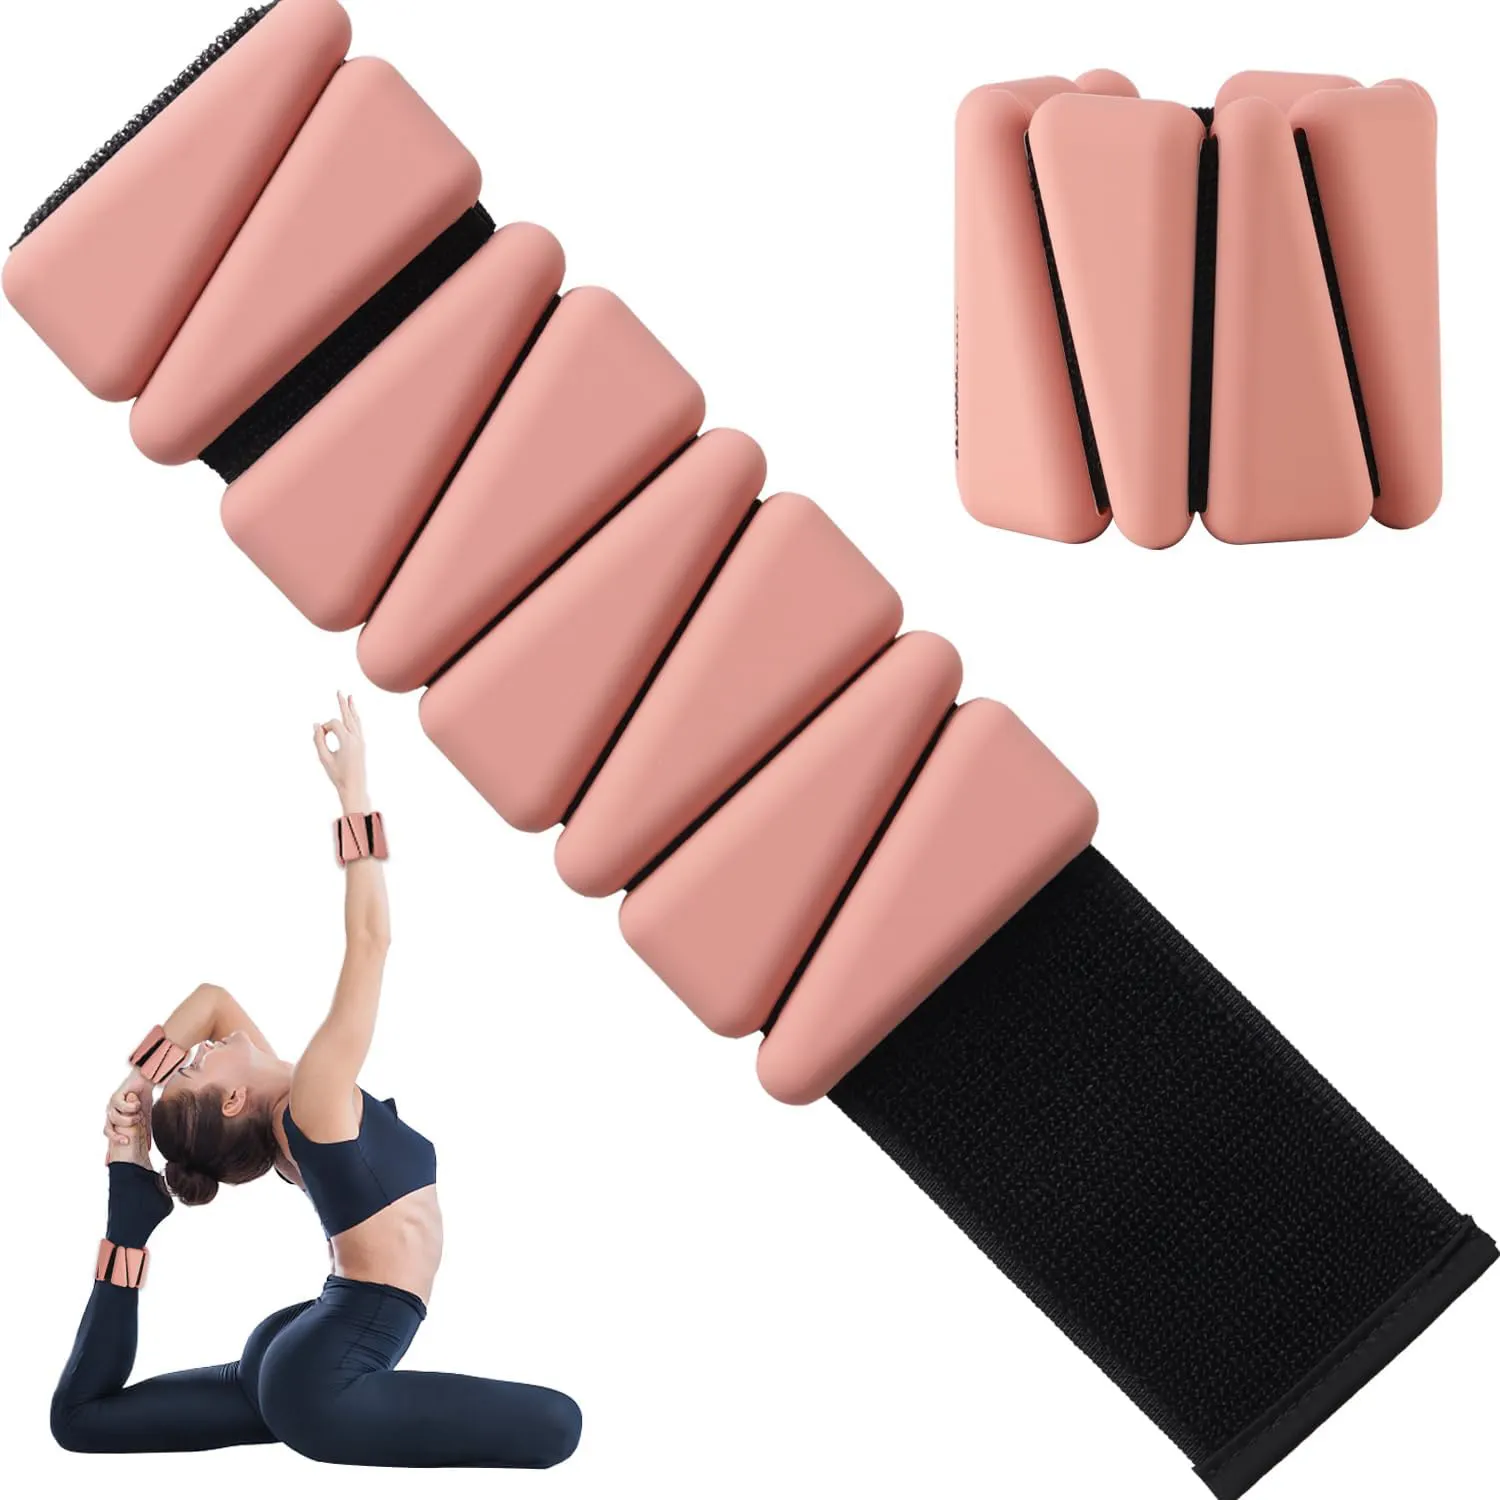 Outdoor Home Gym 2LB cinturino regolabile braccialetti indossabili in Silicone per polsi pesi alla caviglia per l'allenamento della forza